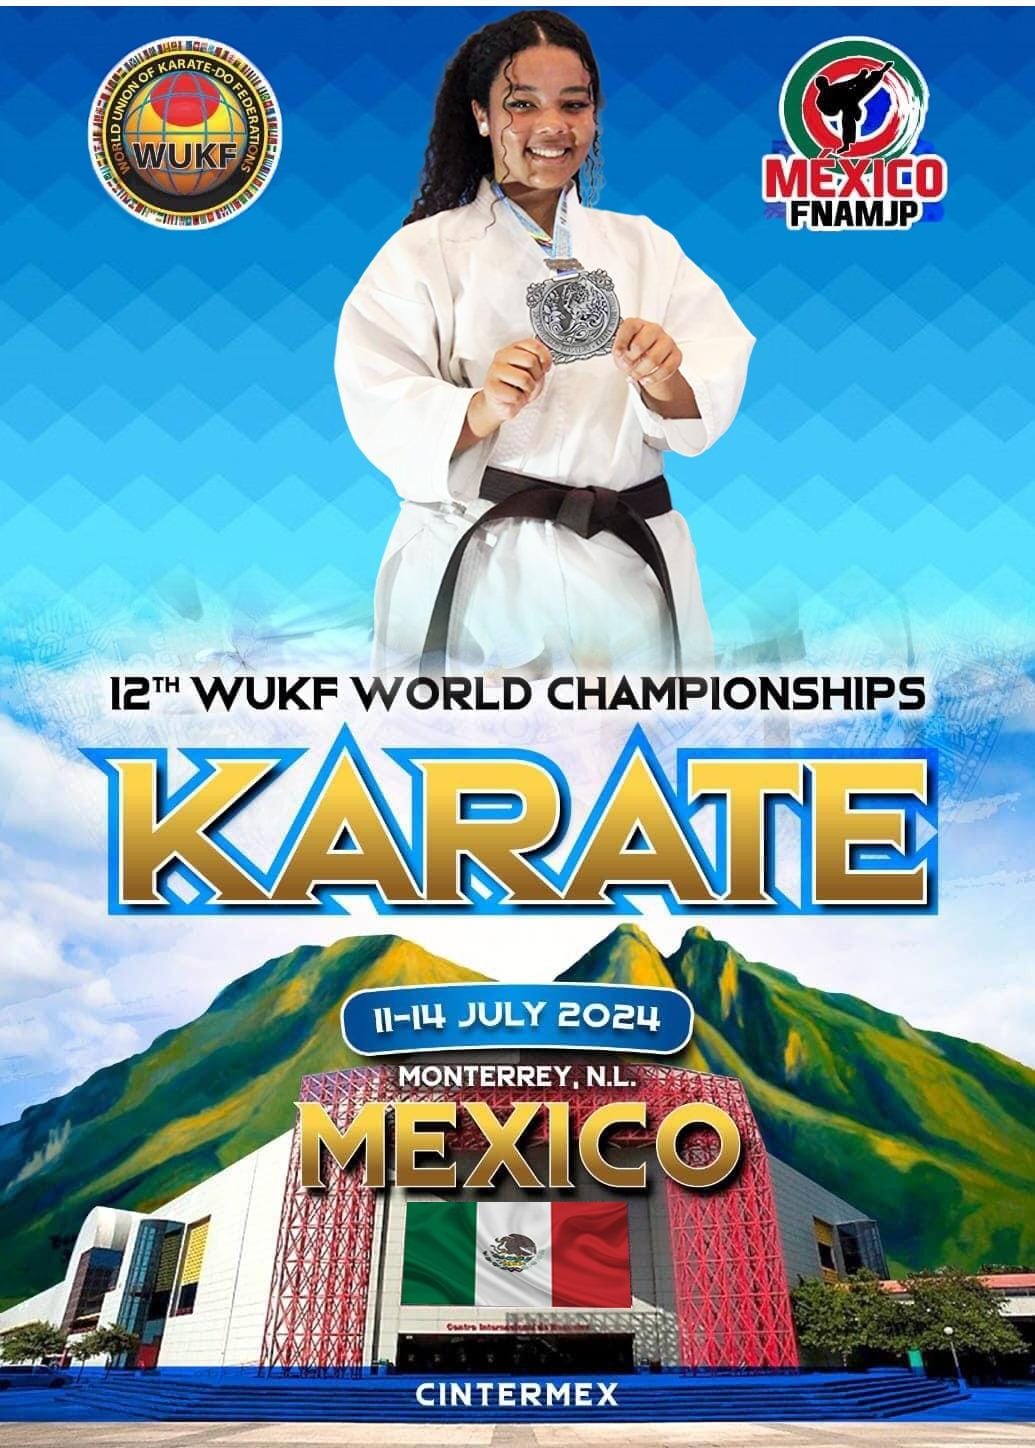 Karateca de Serra Negra busca recursos para disputar competição mundial